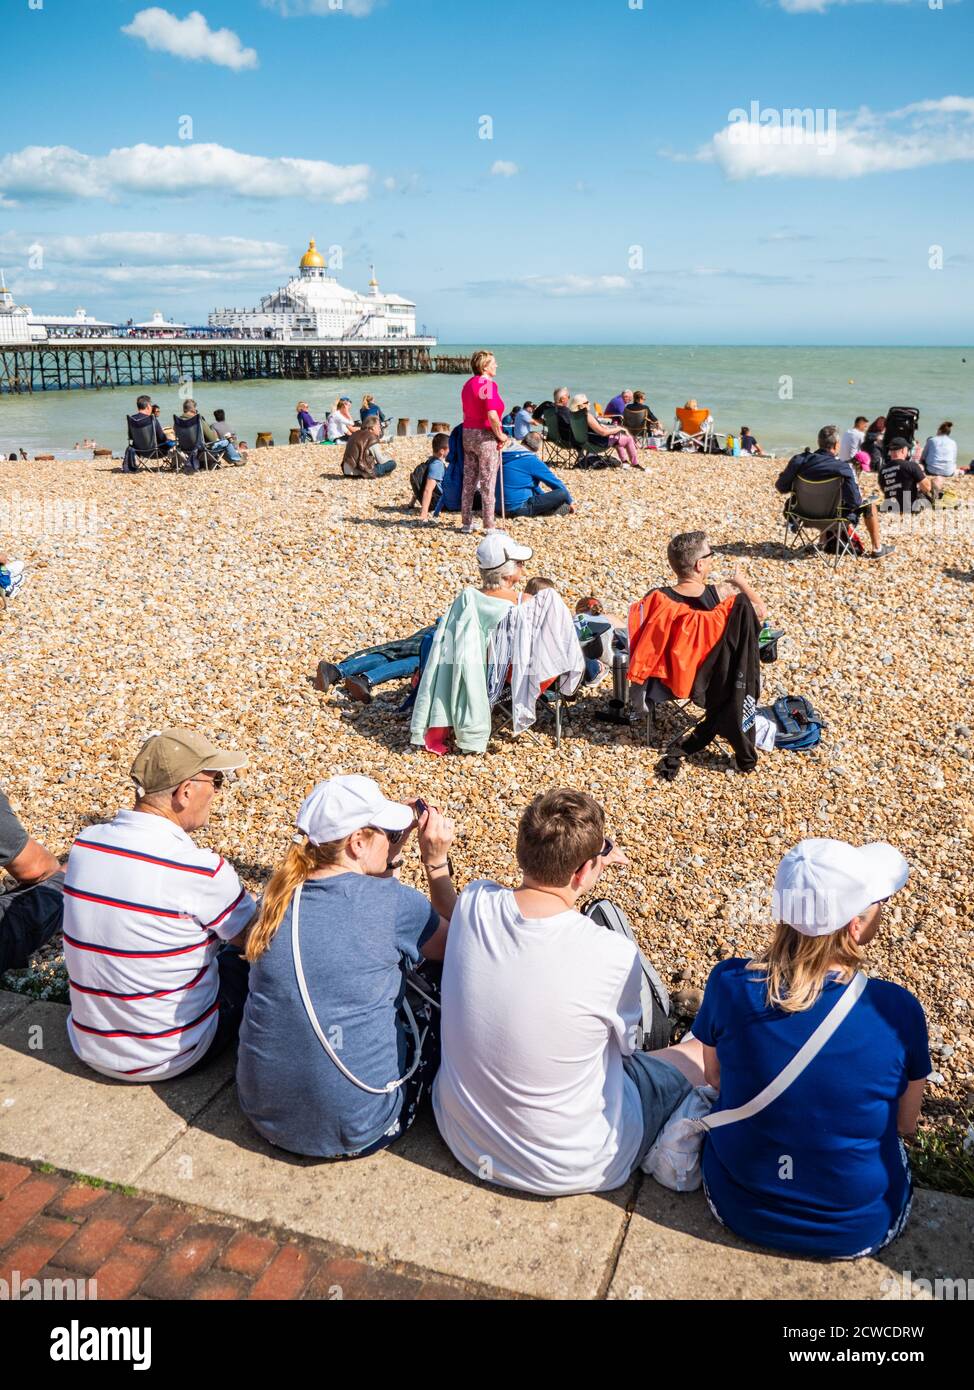 Eastbourne plage et jetée, Angleterre. Une scène estivale anglaise en bord de mer avec des touristes appréciant le temps chaud de saison sur la côte sud britannique. Banque D'Images